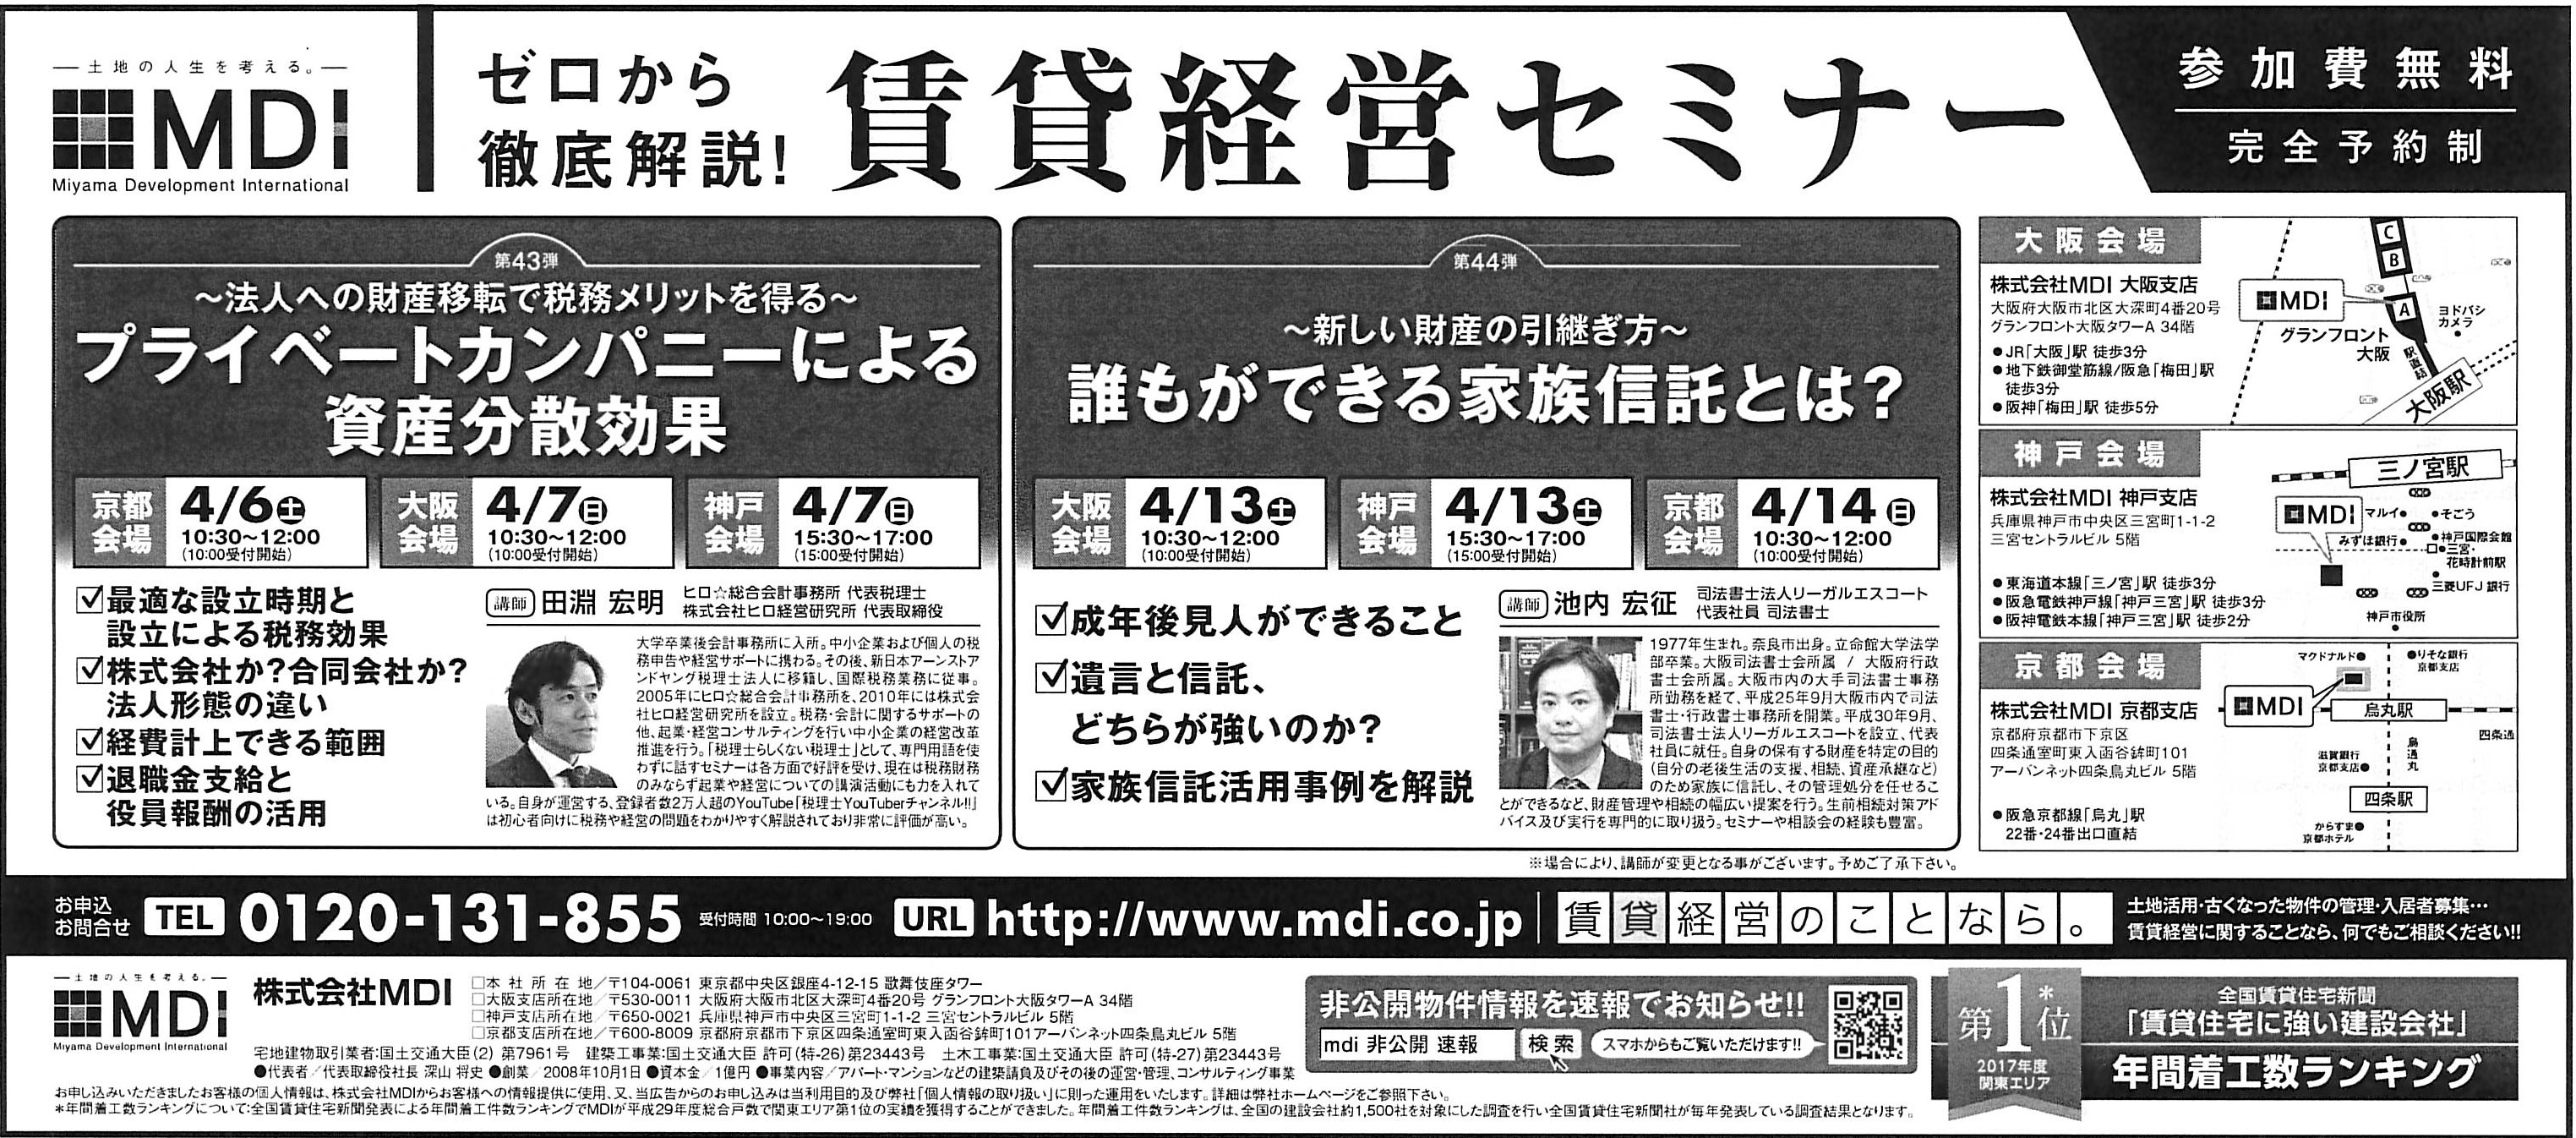 2019年3月30日日経新聞に掲載されました。